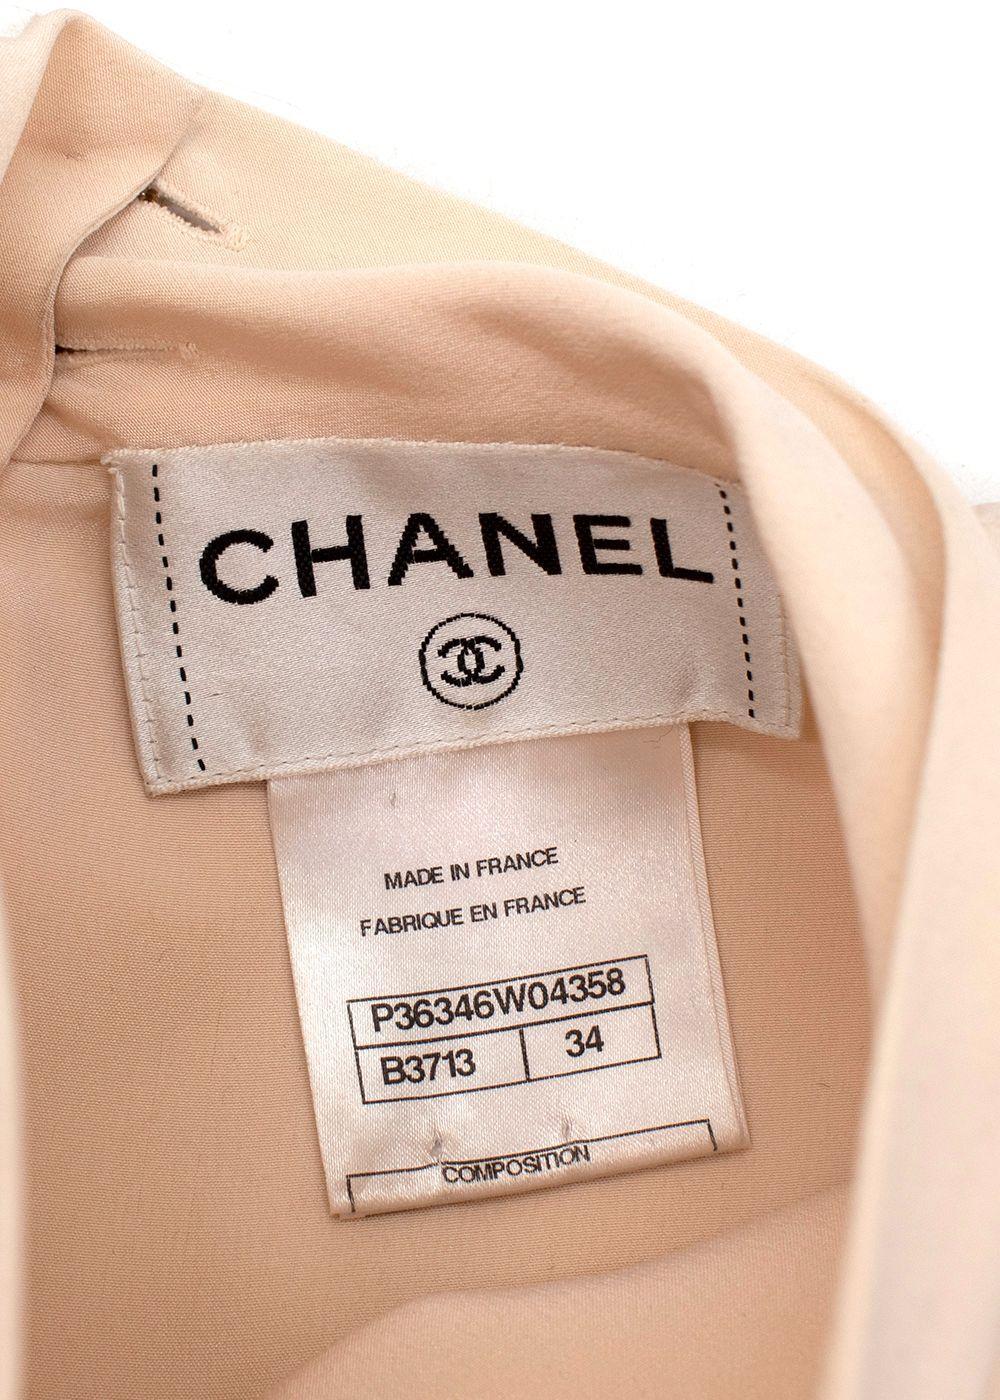 Chanel Belted Houndstooth Tweed Set 10